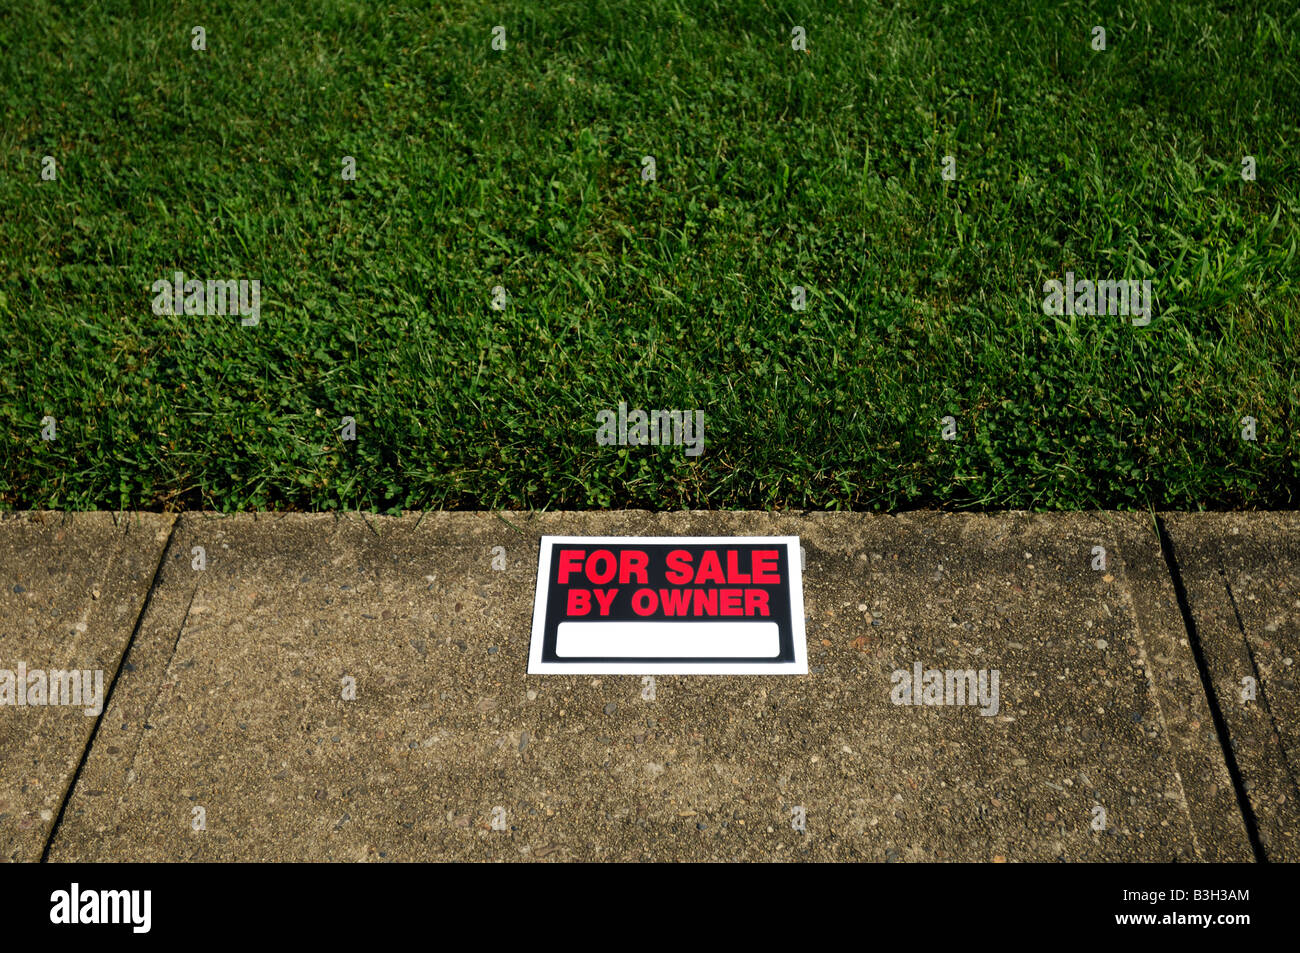 Une propriété à vendre par propriétaire de signer sur l'herbe verte et des trottoirs. Banque D'Images